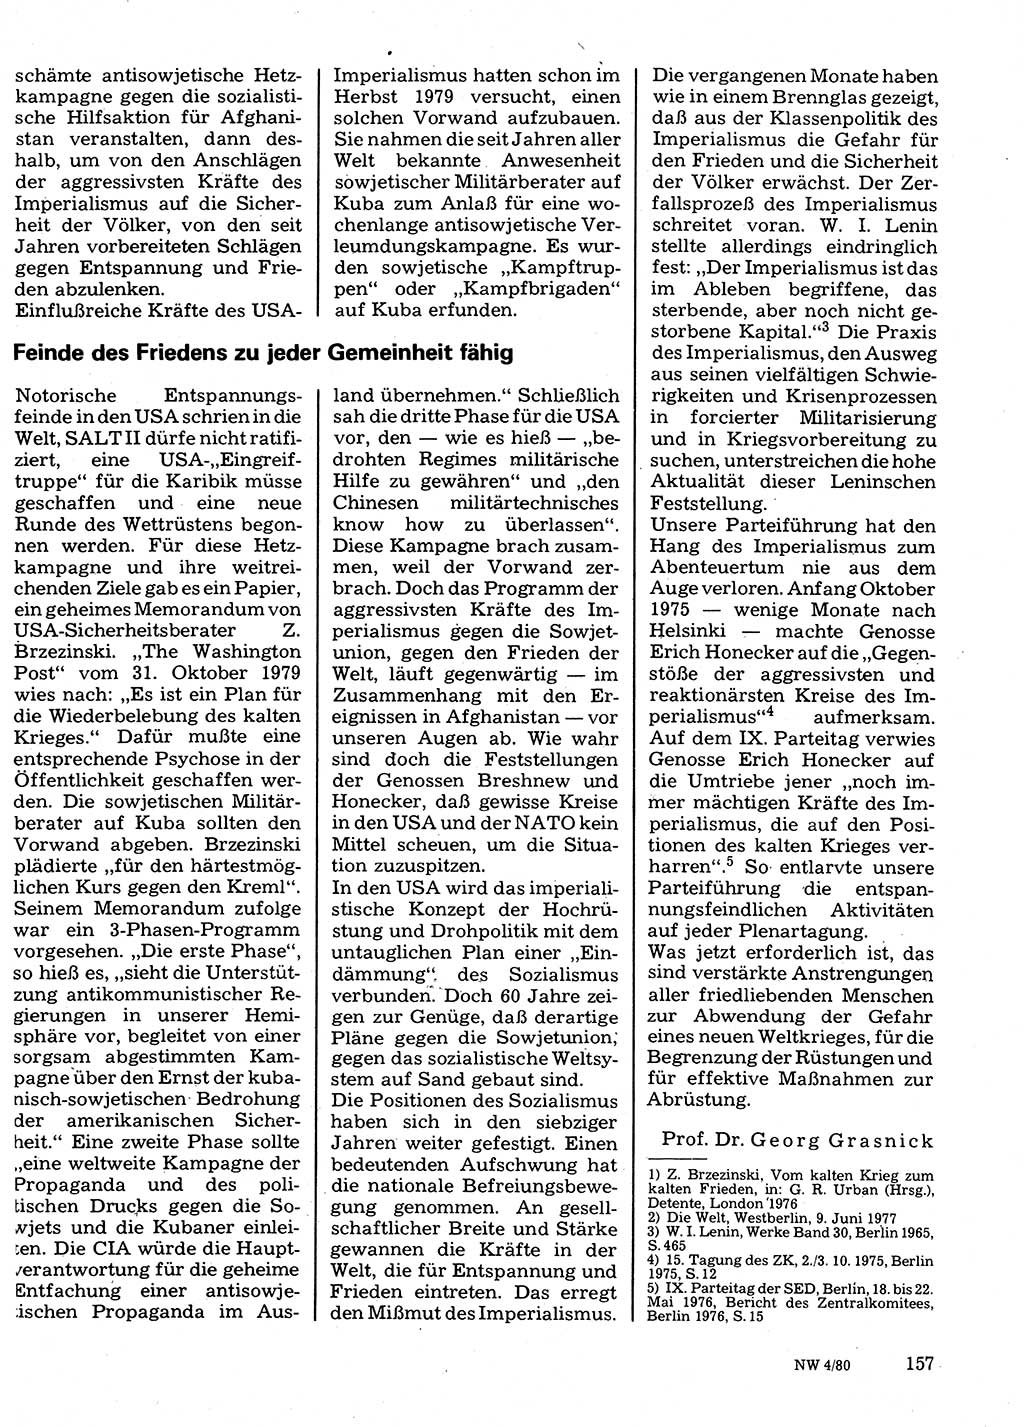 Neuer Weg (NW), Organ des Zentralkomitees (ZK) der SED (Sozialistische Einheitspartei Deutschlands) für Fragen des Parteilebens, 35. Jahrgang [Deutsche Demokratische Republik (DDR)] 1980, Seite 157 (NW ZK SED DDR 1980, S. 157)